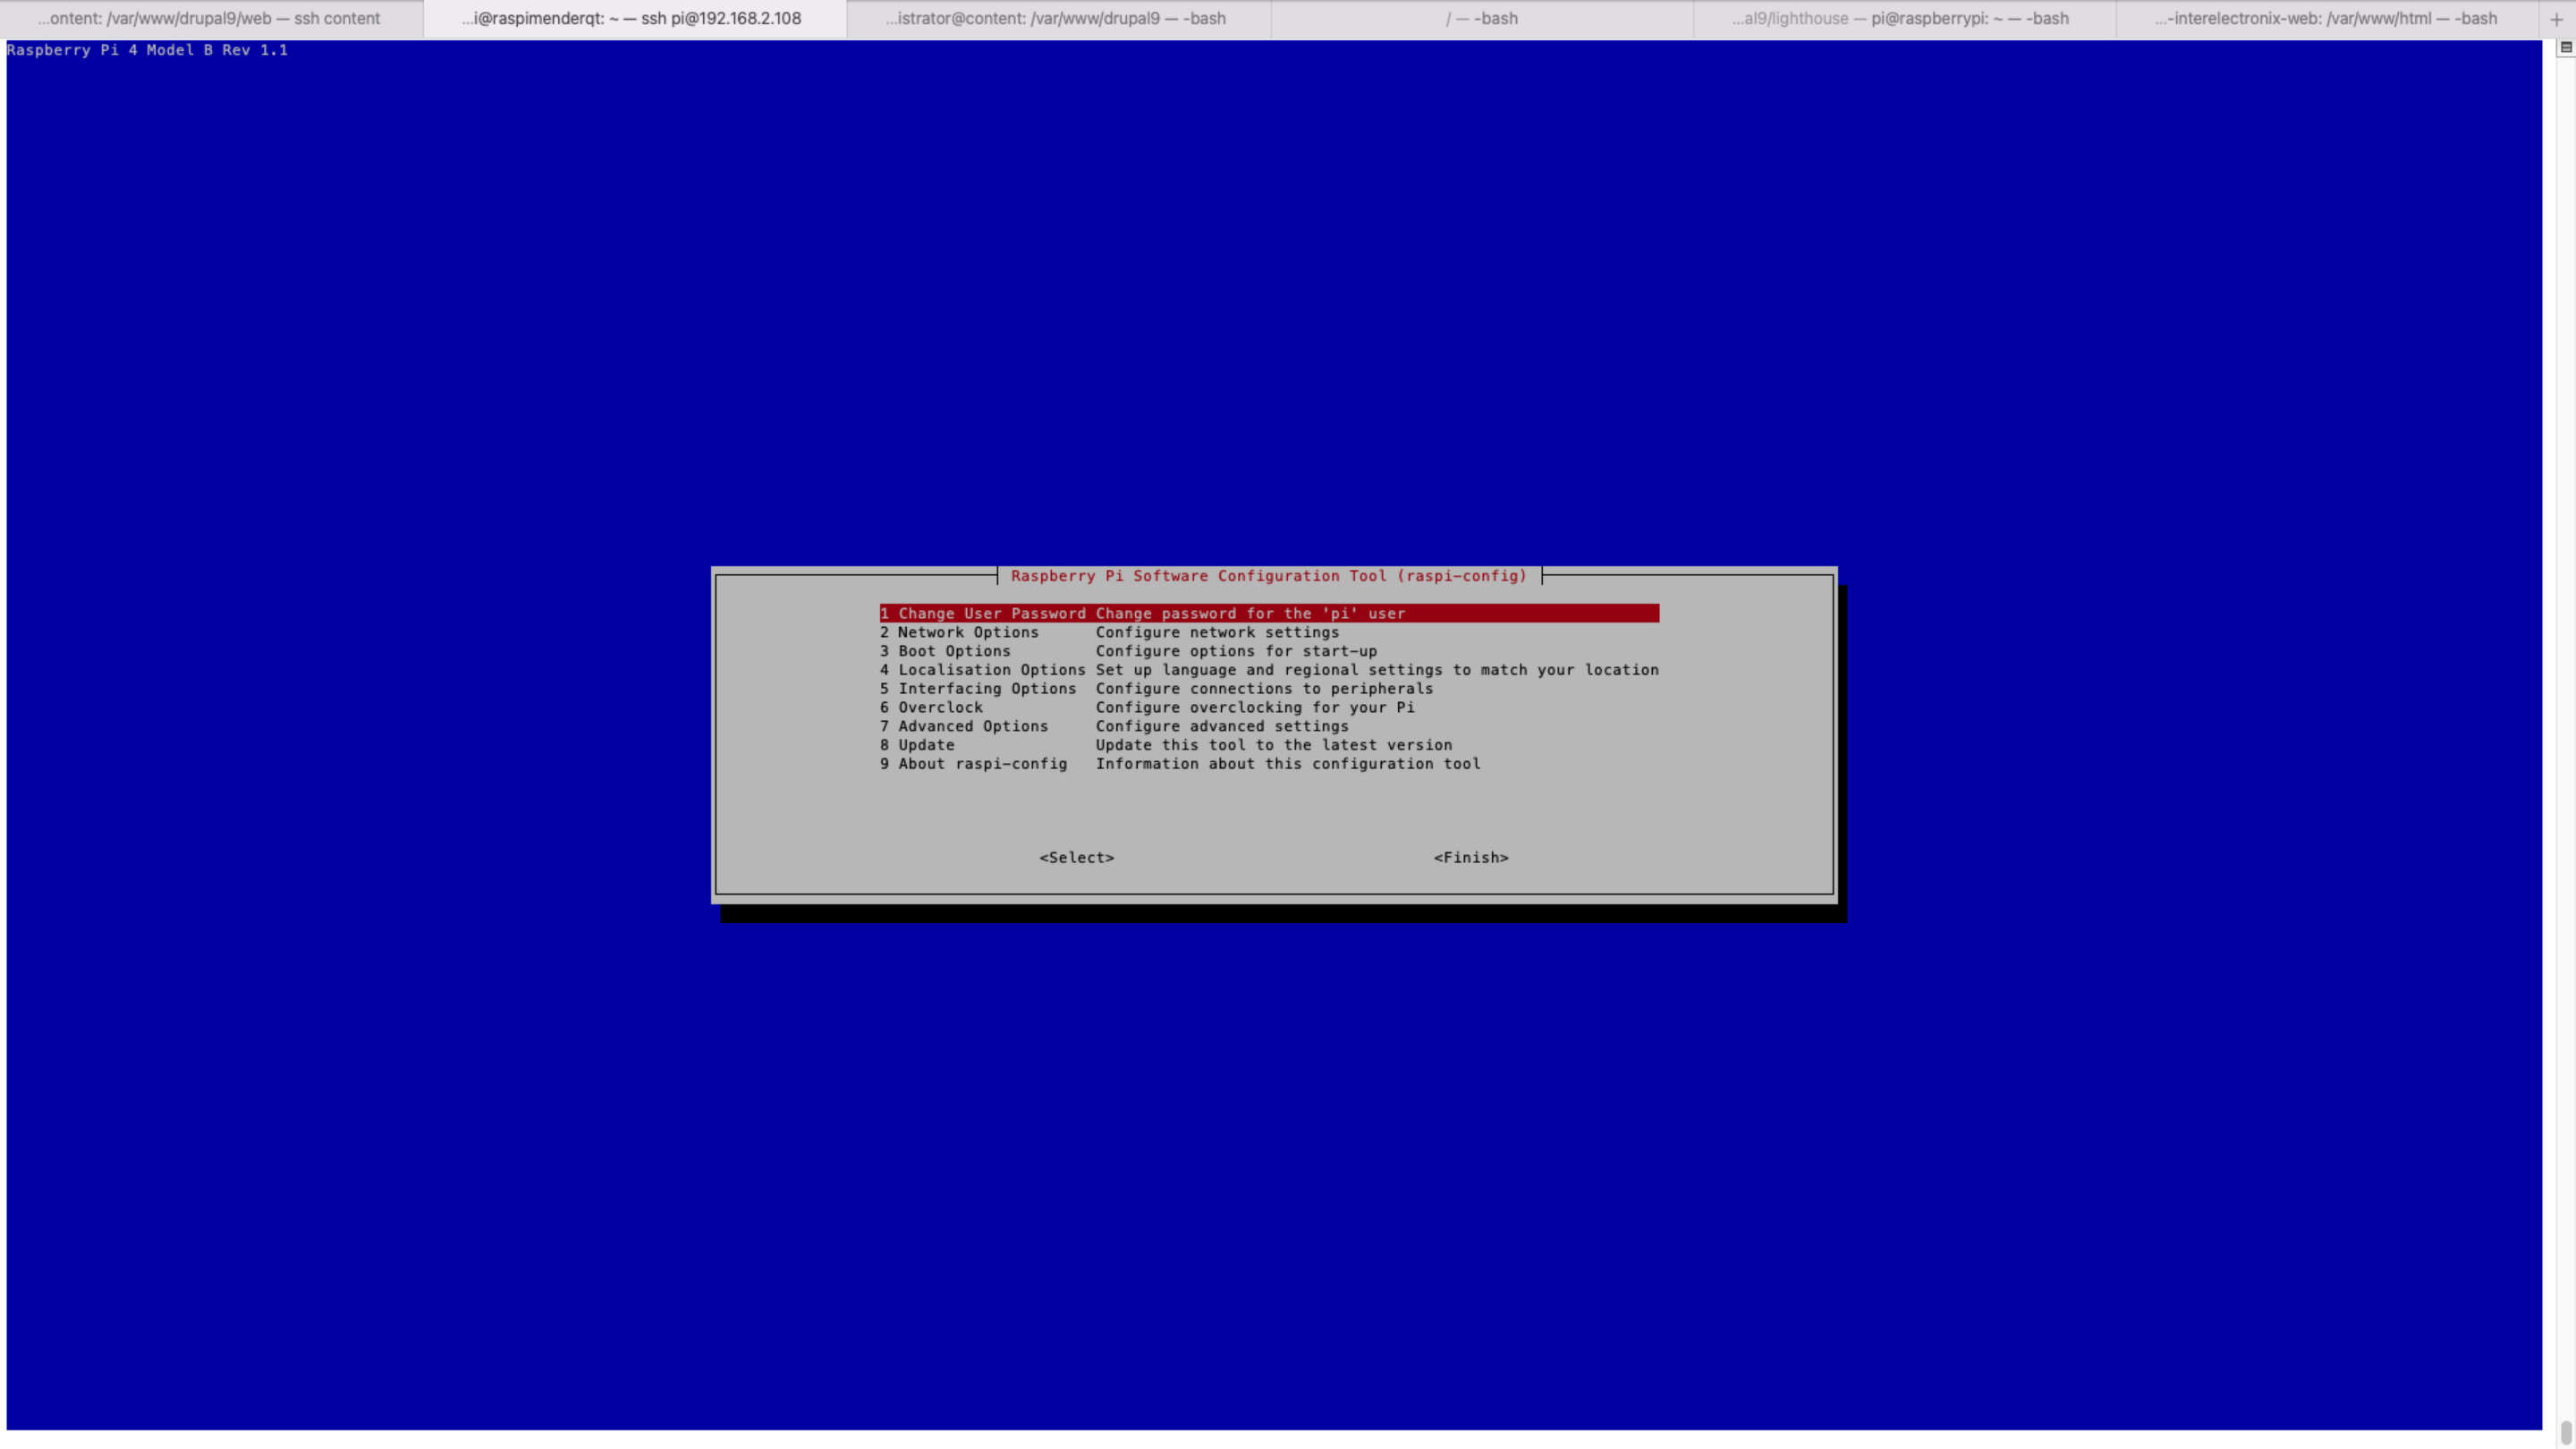 Naka-embed na Software - Qt sa Raspberry Pi 4 isang computer screen shot ng isang asul na screen